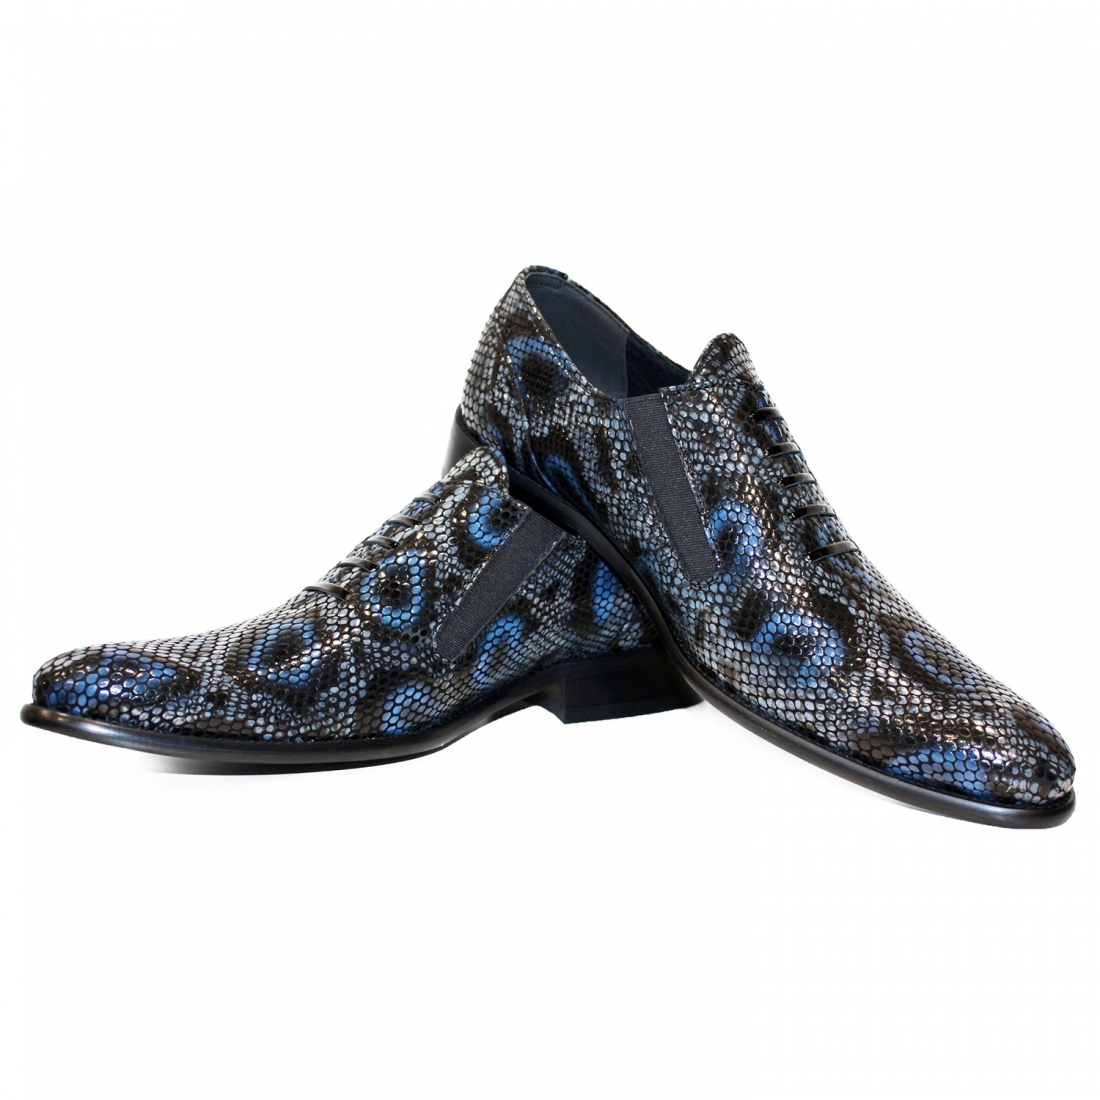 Modello Genoblo - Mocassini - Handmade Colorful Italian Leather Shoes